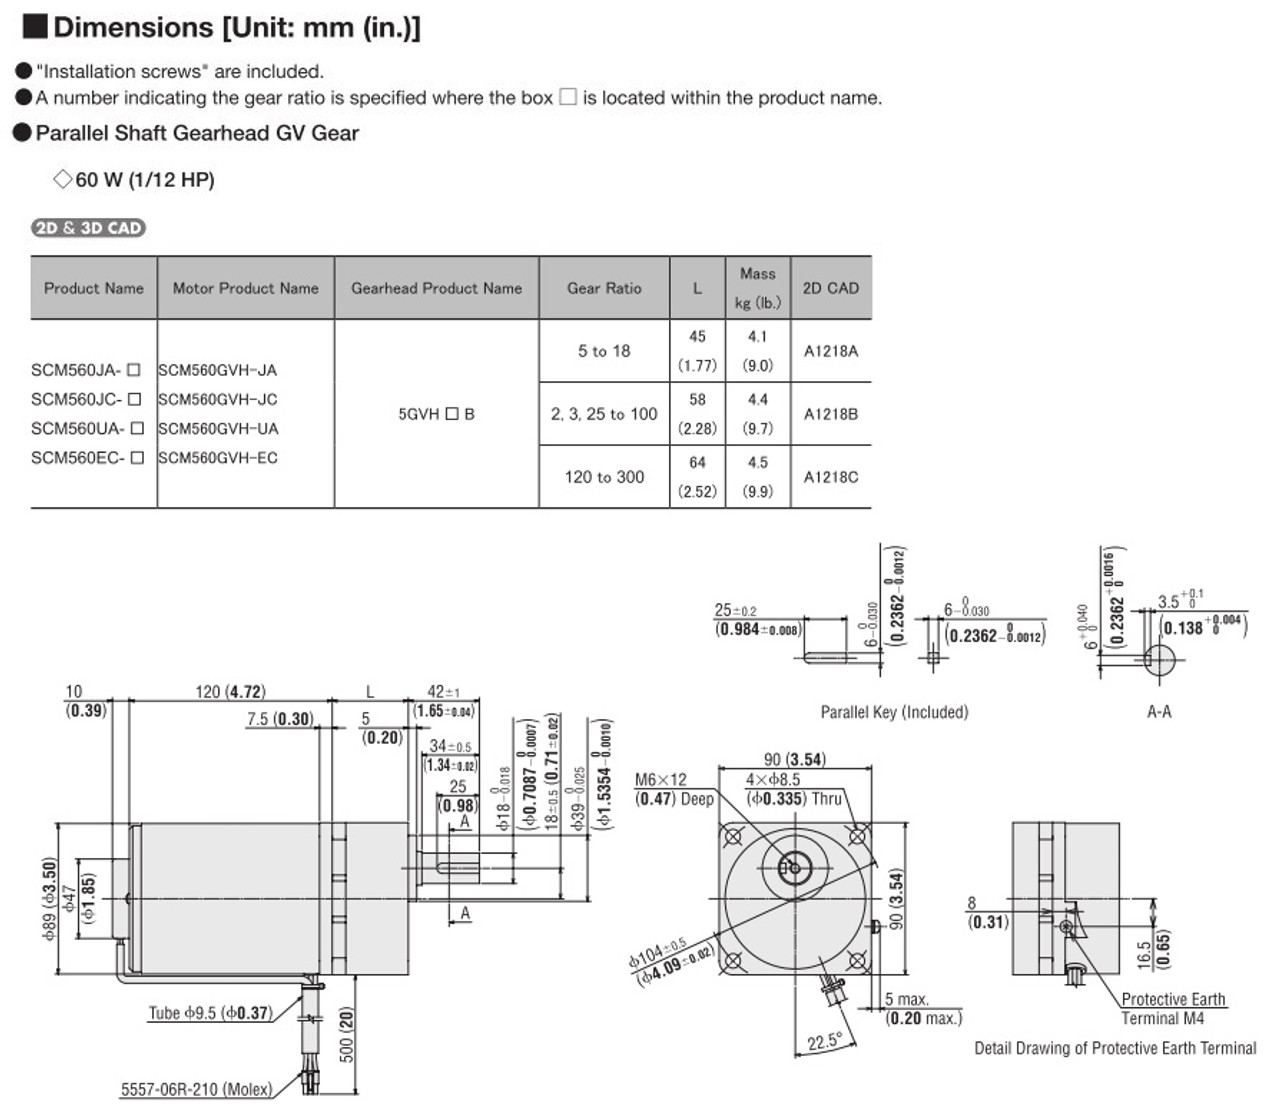 SCM560EC-15 - Dimensions